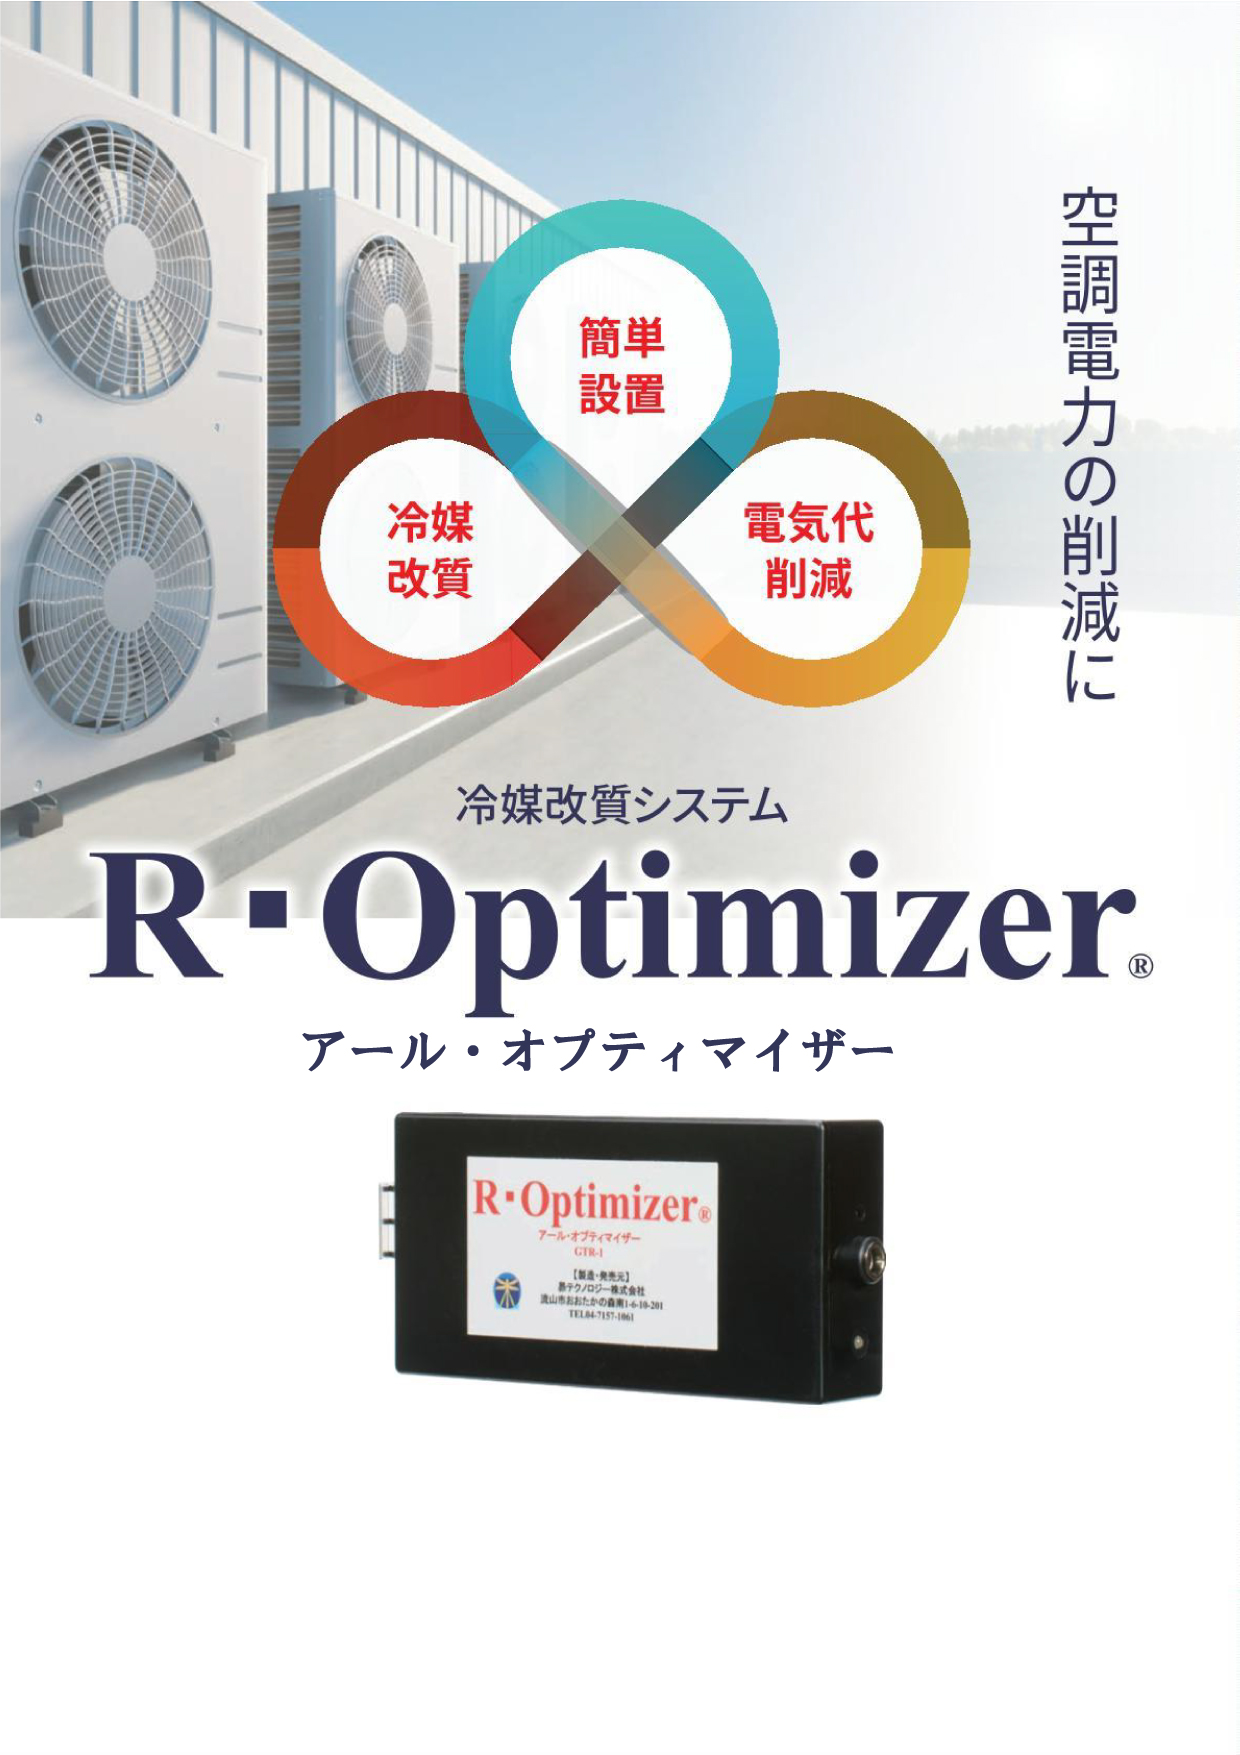 R-Optimizer